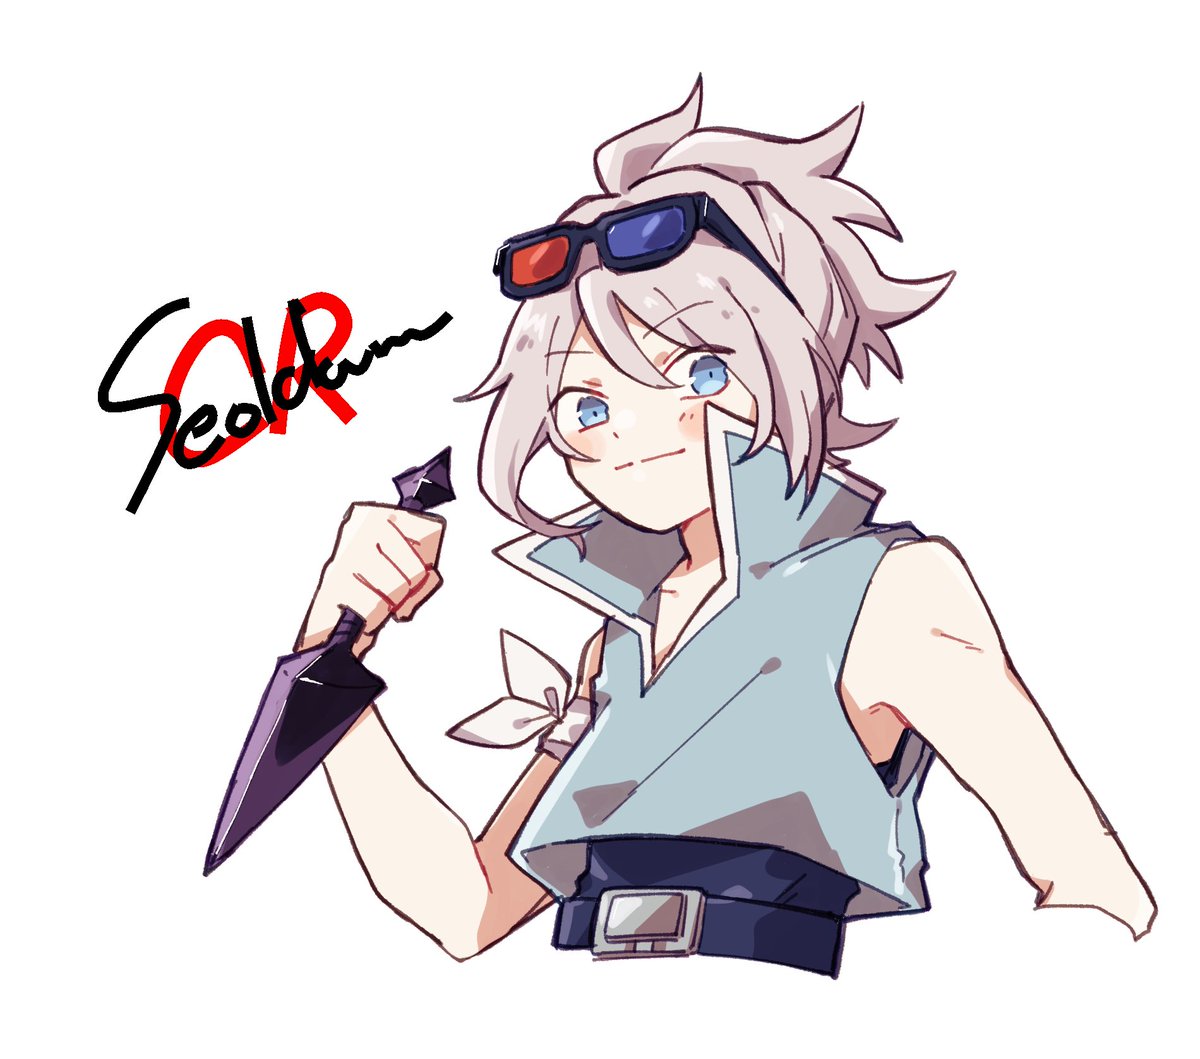 kunai weapon eyewear on head holding solo blue eyes sunglasses  illustration images